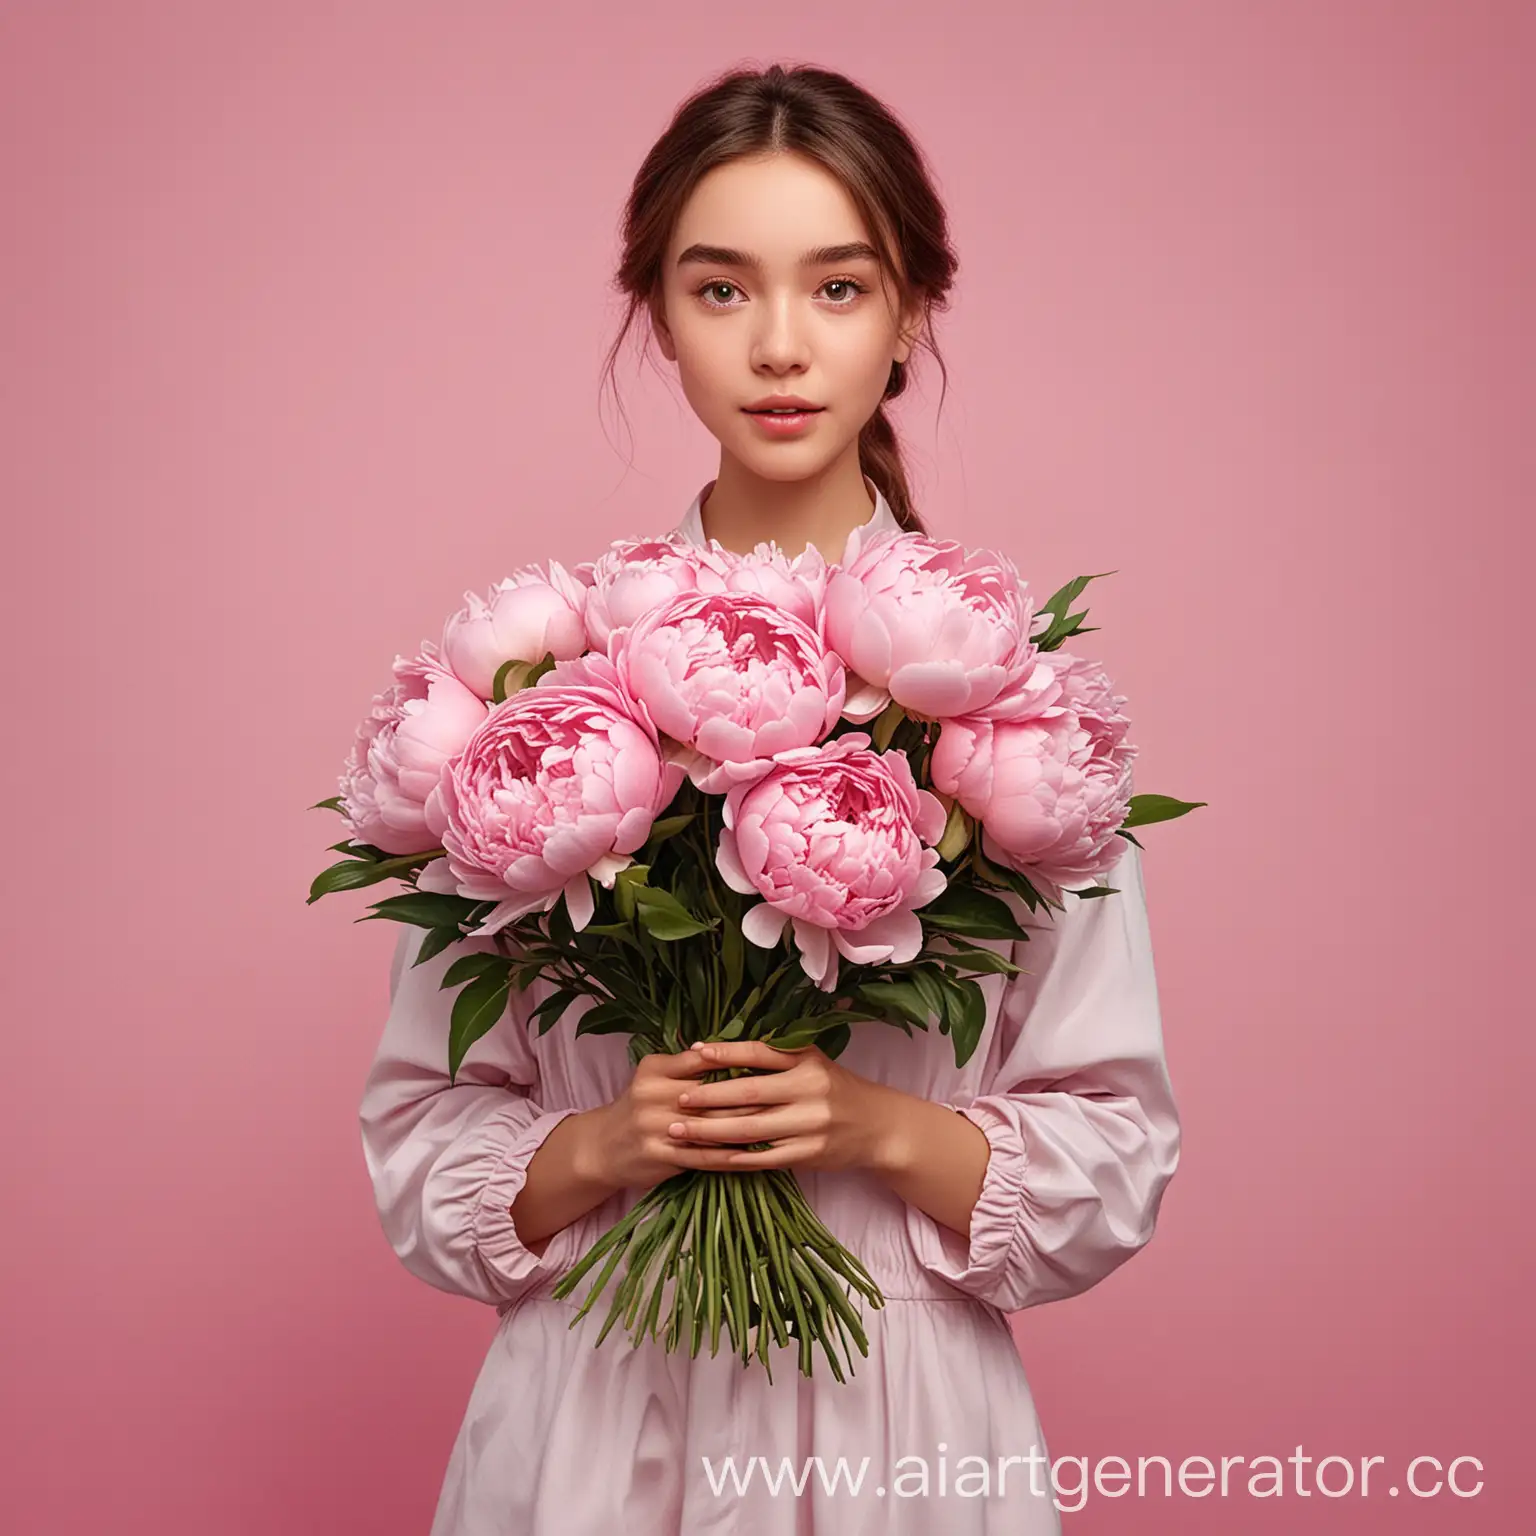 Рекламный плакат доставки цветов с главной героиней – девушкой с букетом пионов на розовом воздушном фоне – не просто информационное объявление, а настоящее произведение искусства, способное заинтересовать и вдохновить своей красотой и изысканностью